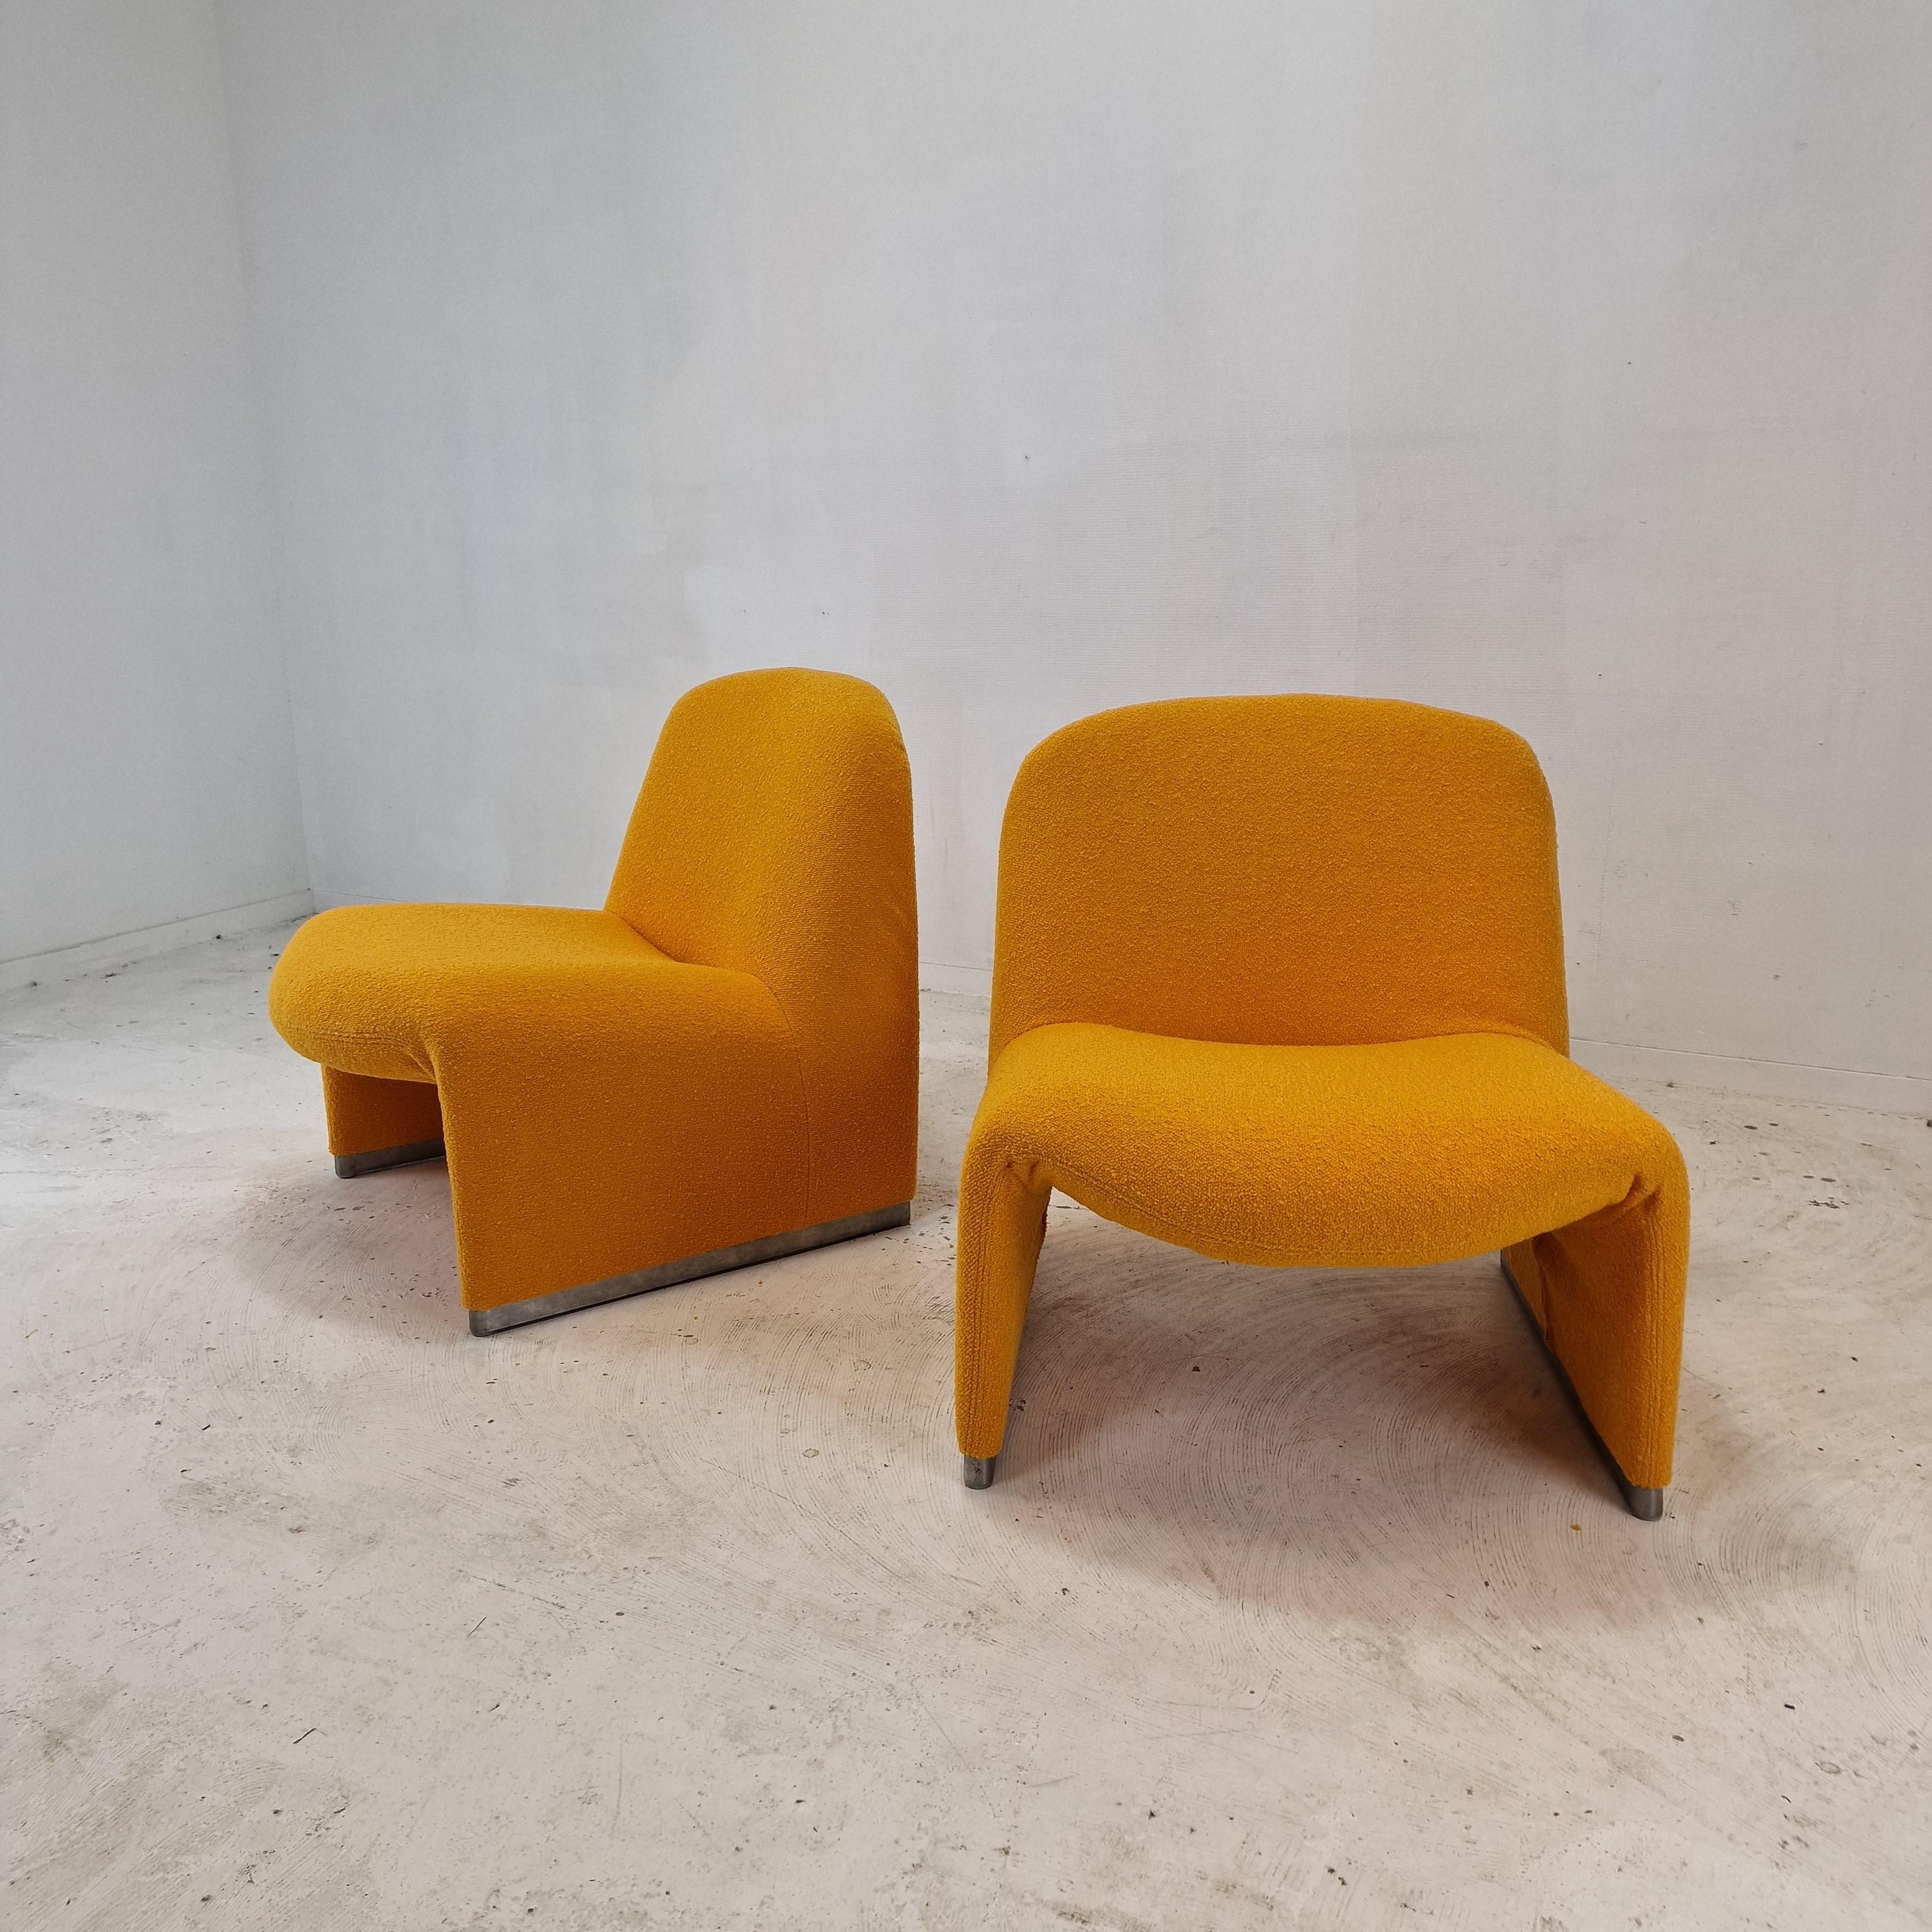 Chaise Alky agréable et confortable. 
Conçu par Giancarlo Piretti en 1969, produit par Artifort. 

Il y a 3 chaises disponibles, le prix est pour 1 chaise.
Ils viennent d'être retapissés avec un tissu de laine très confortable dans une couleur